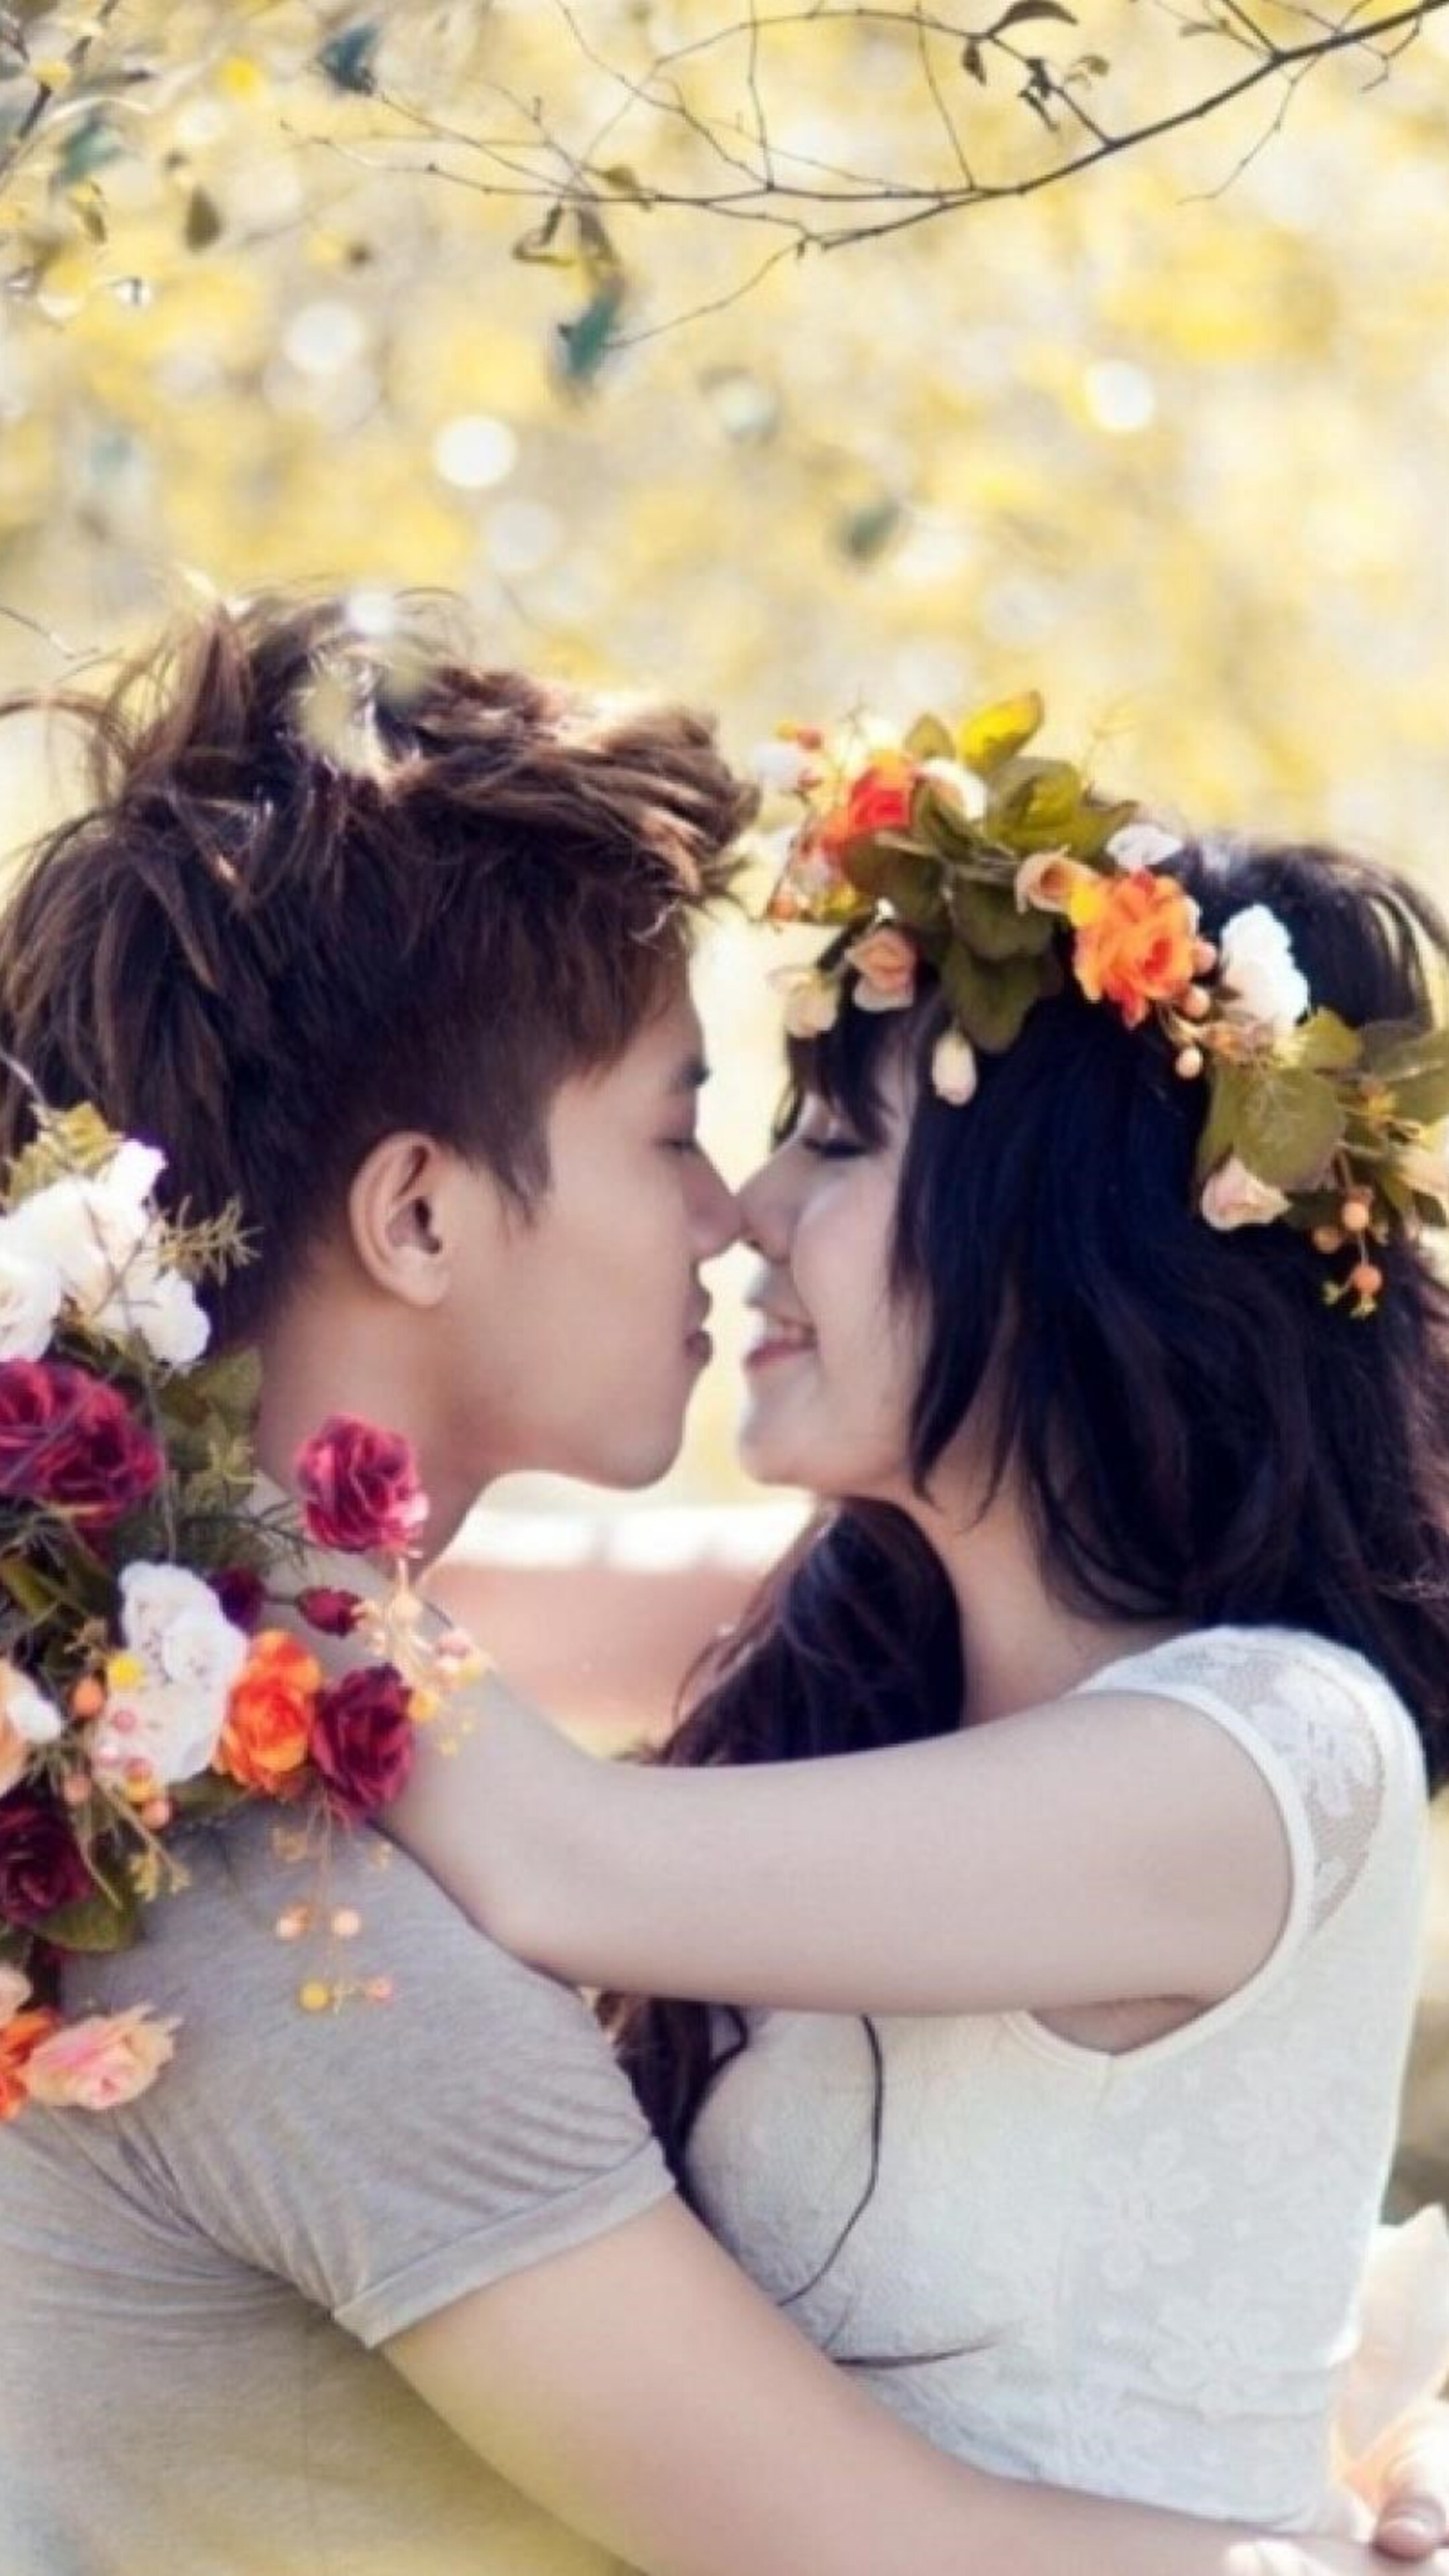 Download romance. Романтичные цветы для девушки. Севишганлар. Любовь в цветах. Романтичные цветы мальчиков.